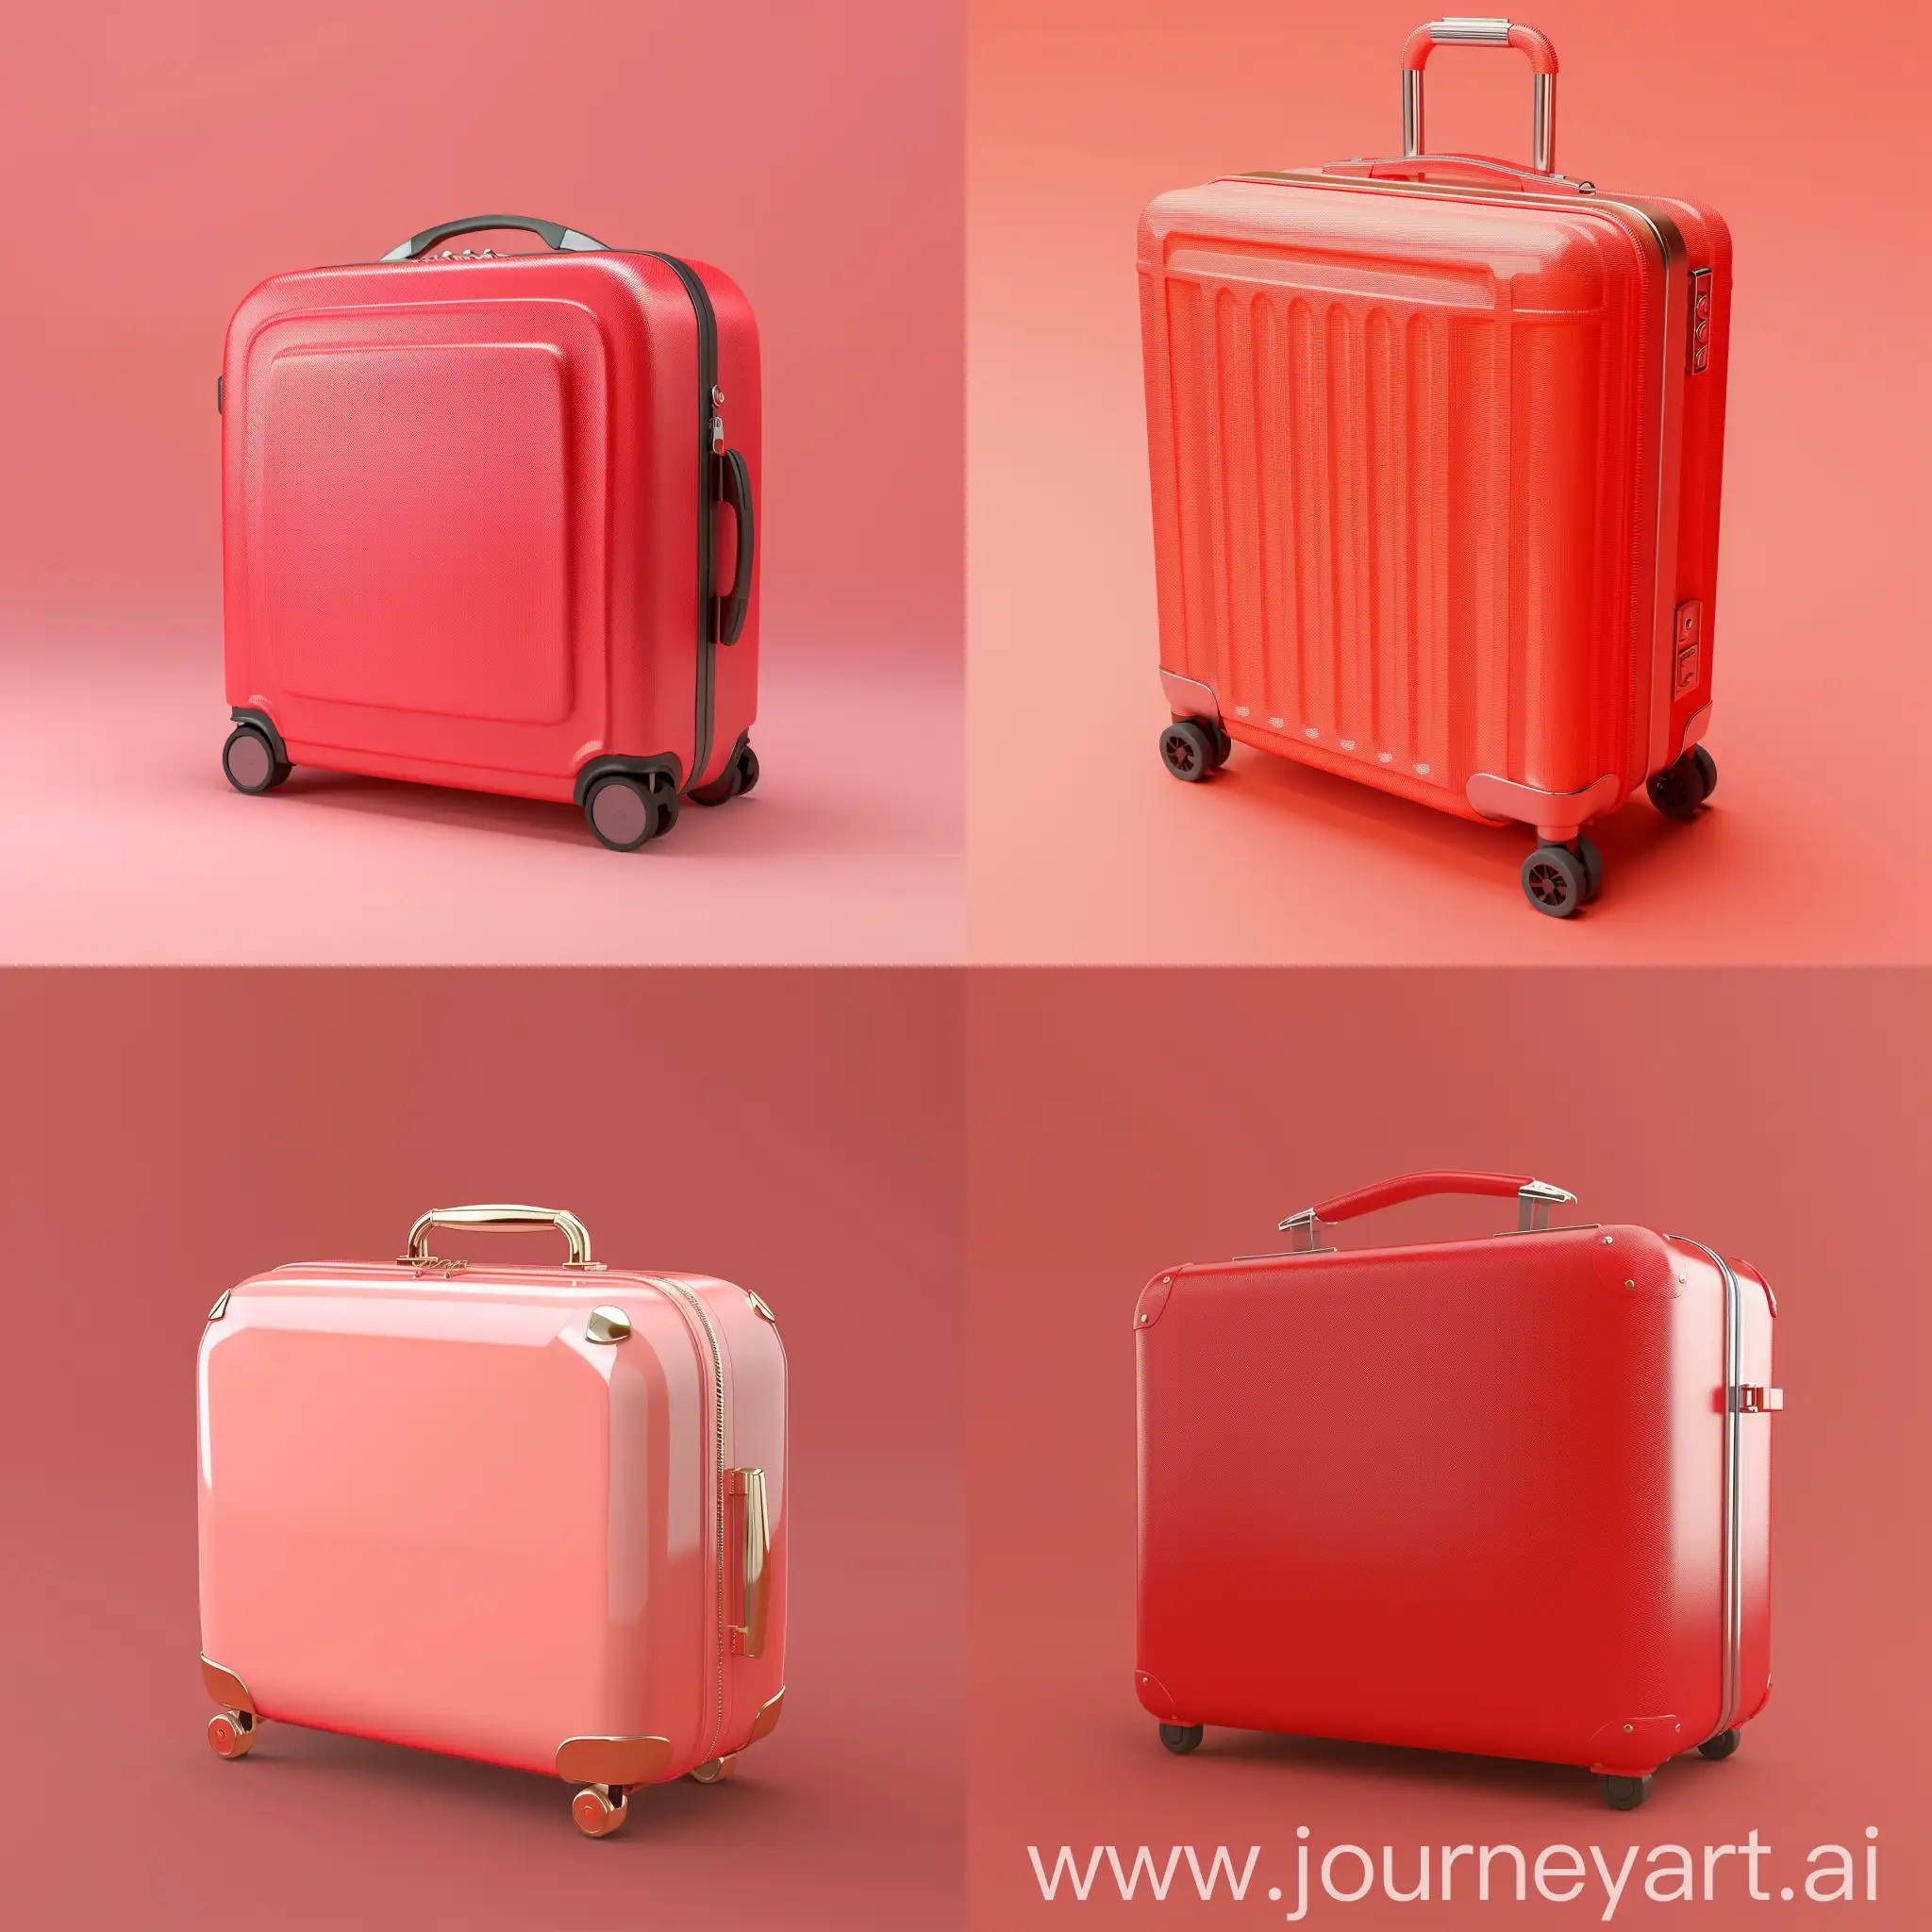 3D в стиле cartoon минималистичный чемодан с выдвижной ручкой. Без детальной проработки мелочей. Фон светло-красный, однотонный.